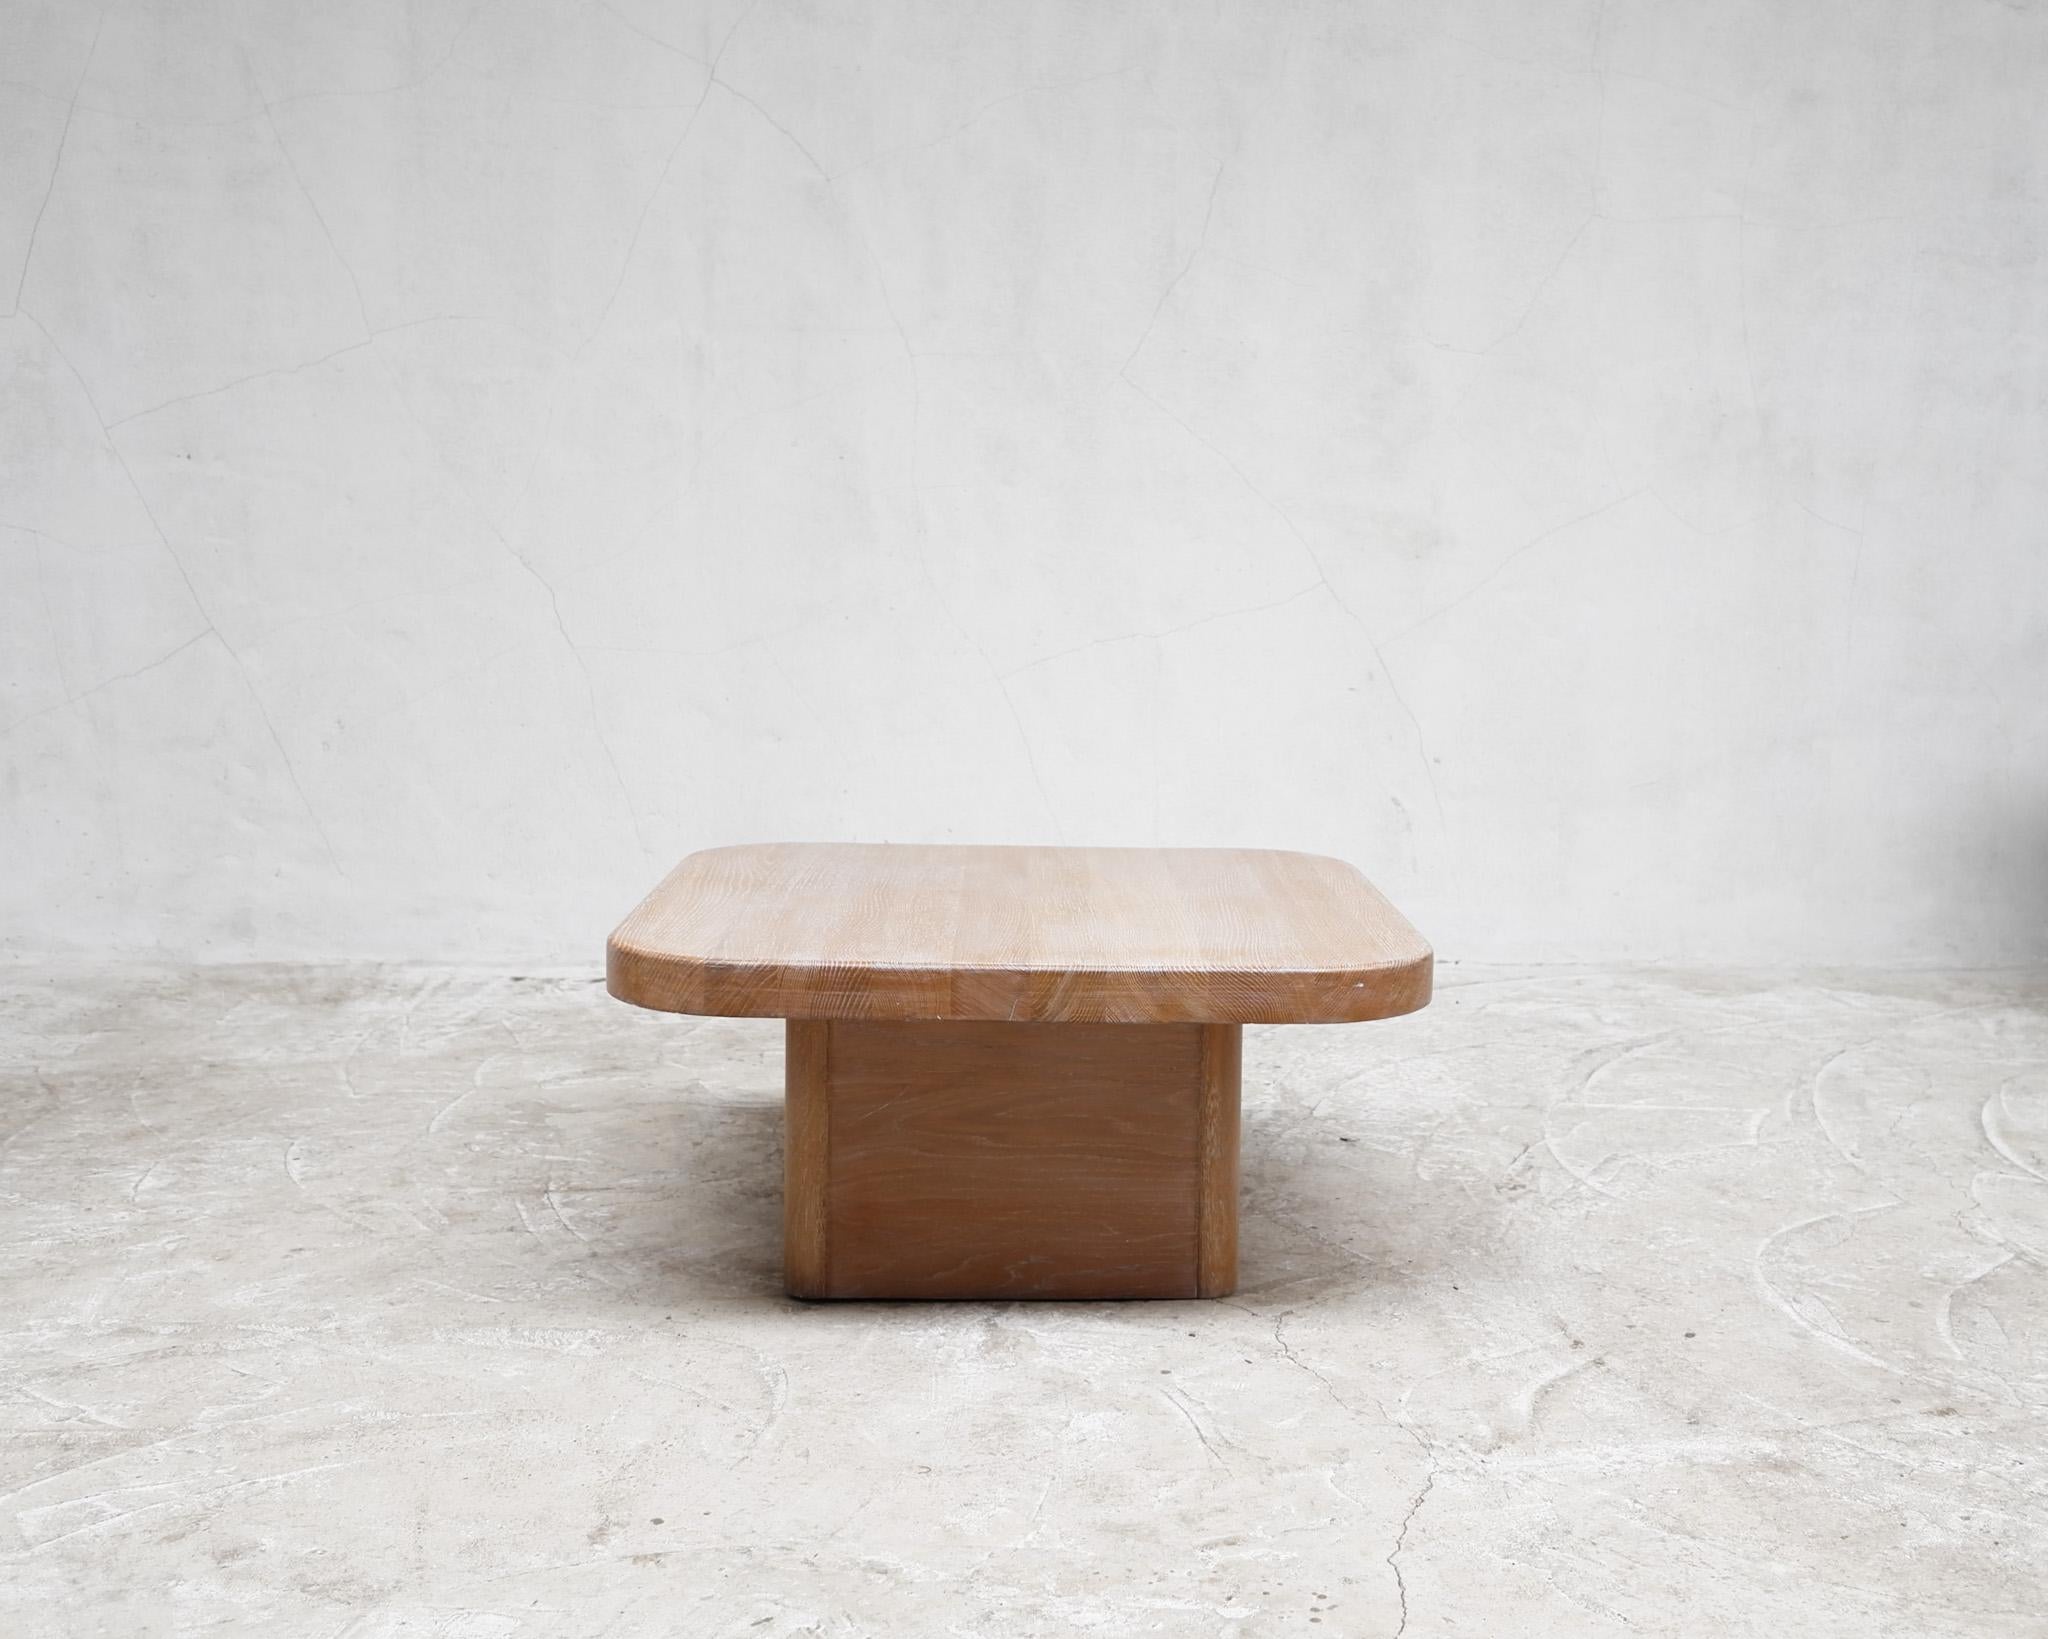 A.I.C C C'est une table basse en chêne chaulé de style moderniste.

Construit en chêne massif avec de bonnes proportions.

-

Cet article est expédié gratuitement aux États-Unis et au Canada par Fedex.